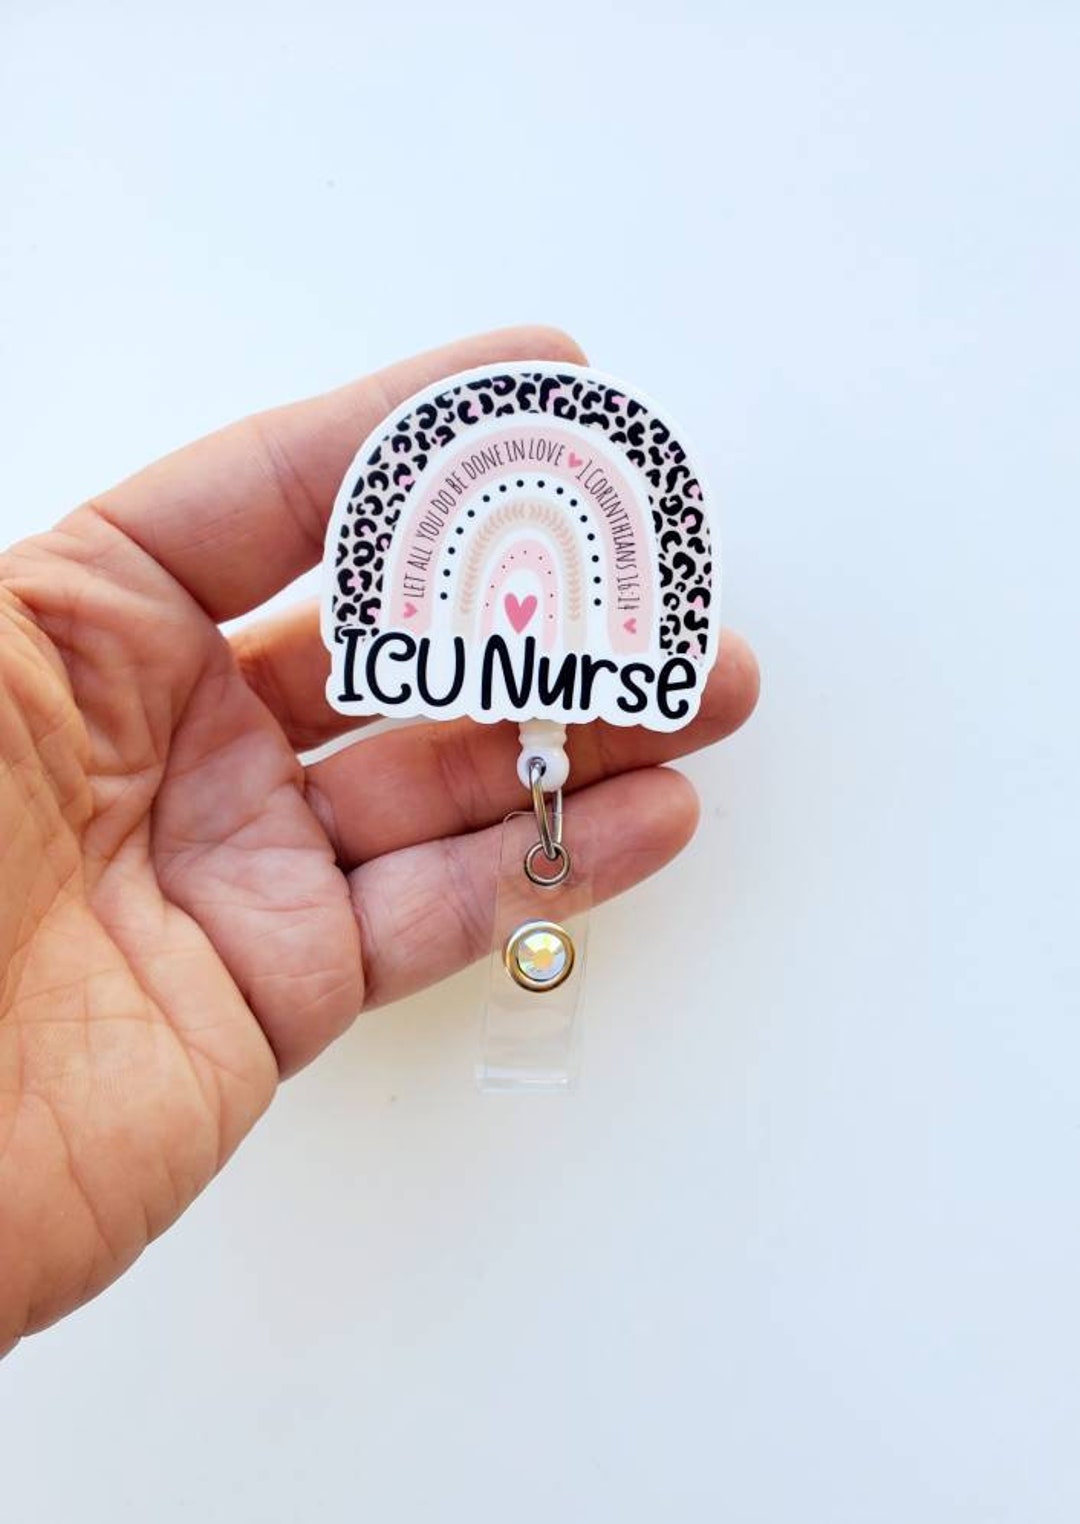 ICU Nurse Badge Reel Icu Rainbow Badge Icu Nurse Carabiner Nurse